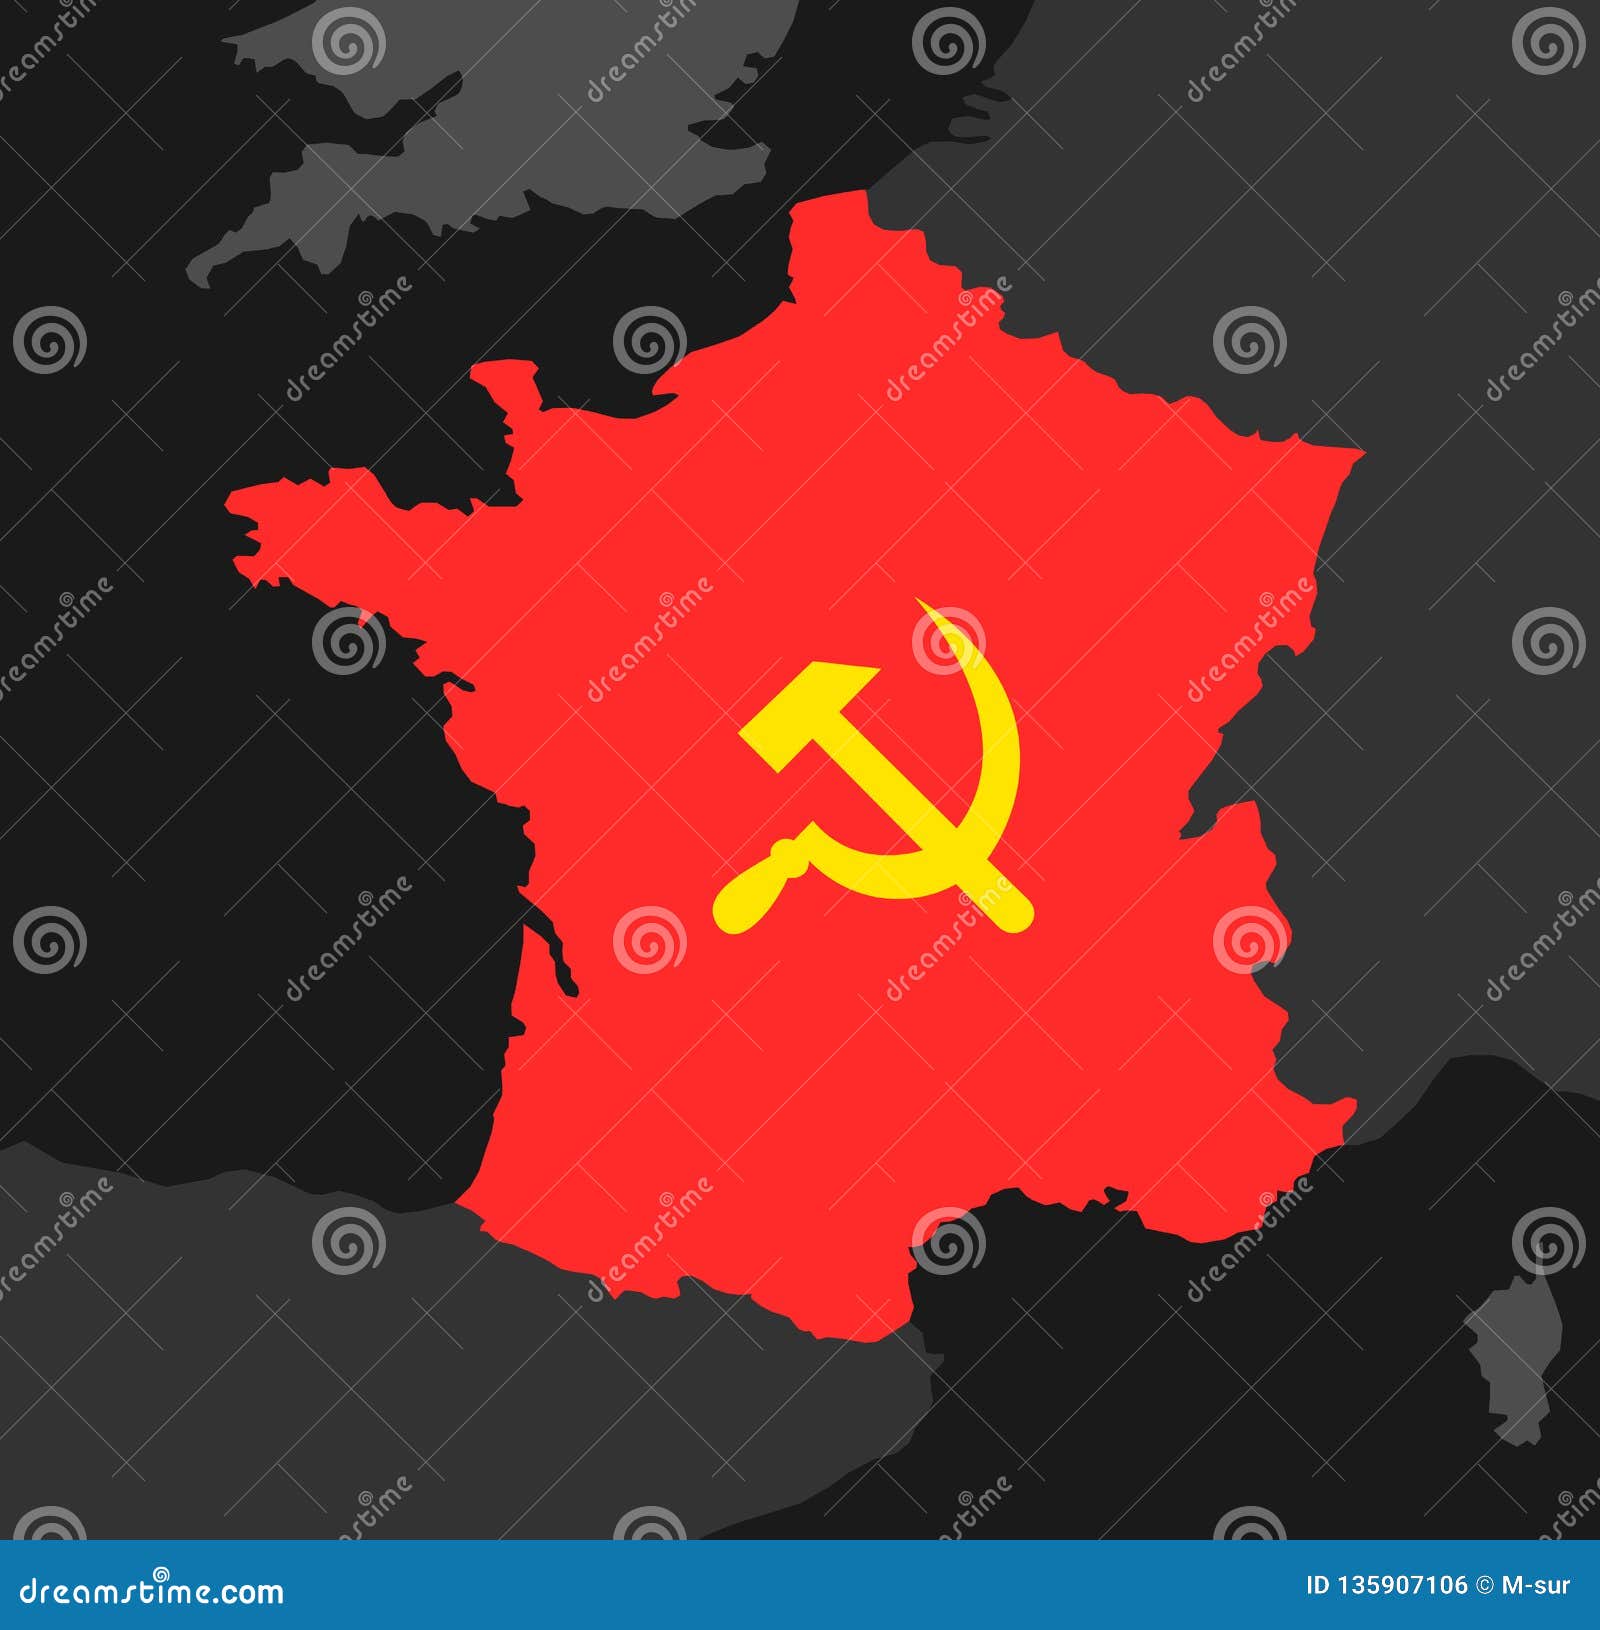 France Socialism